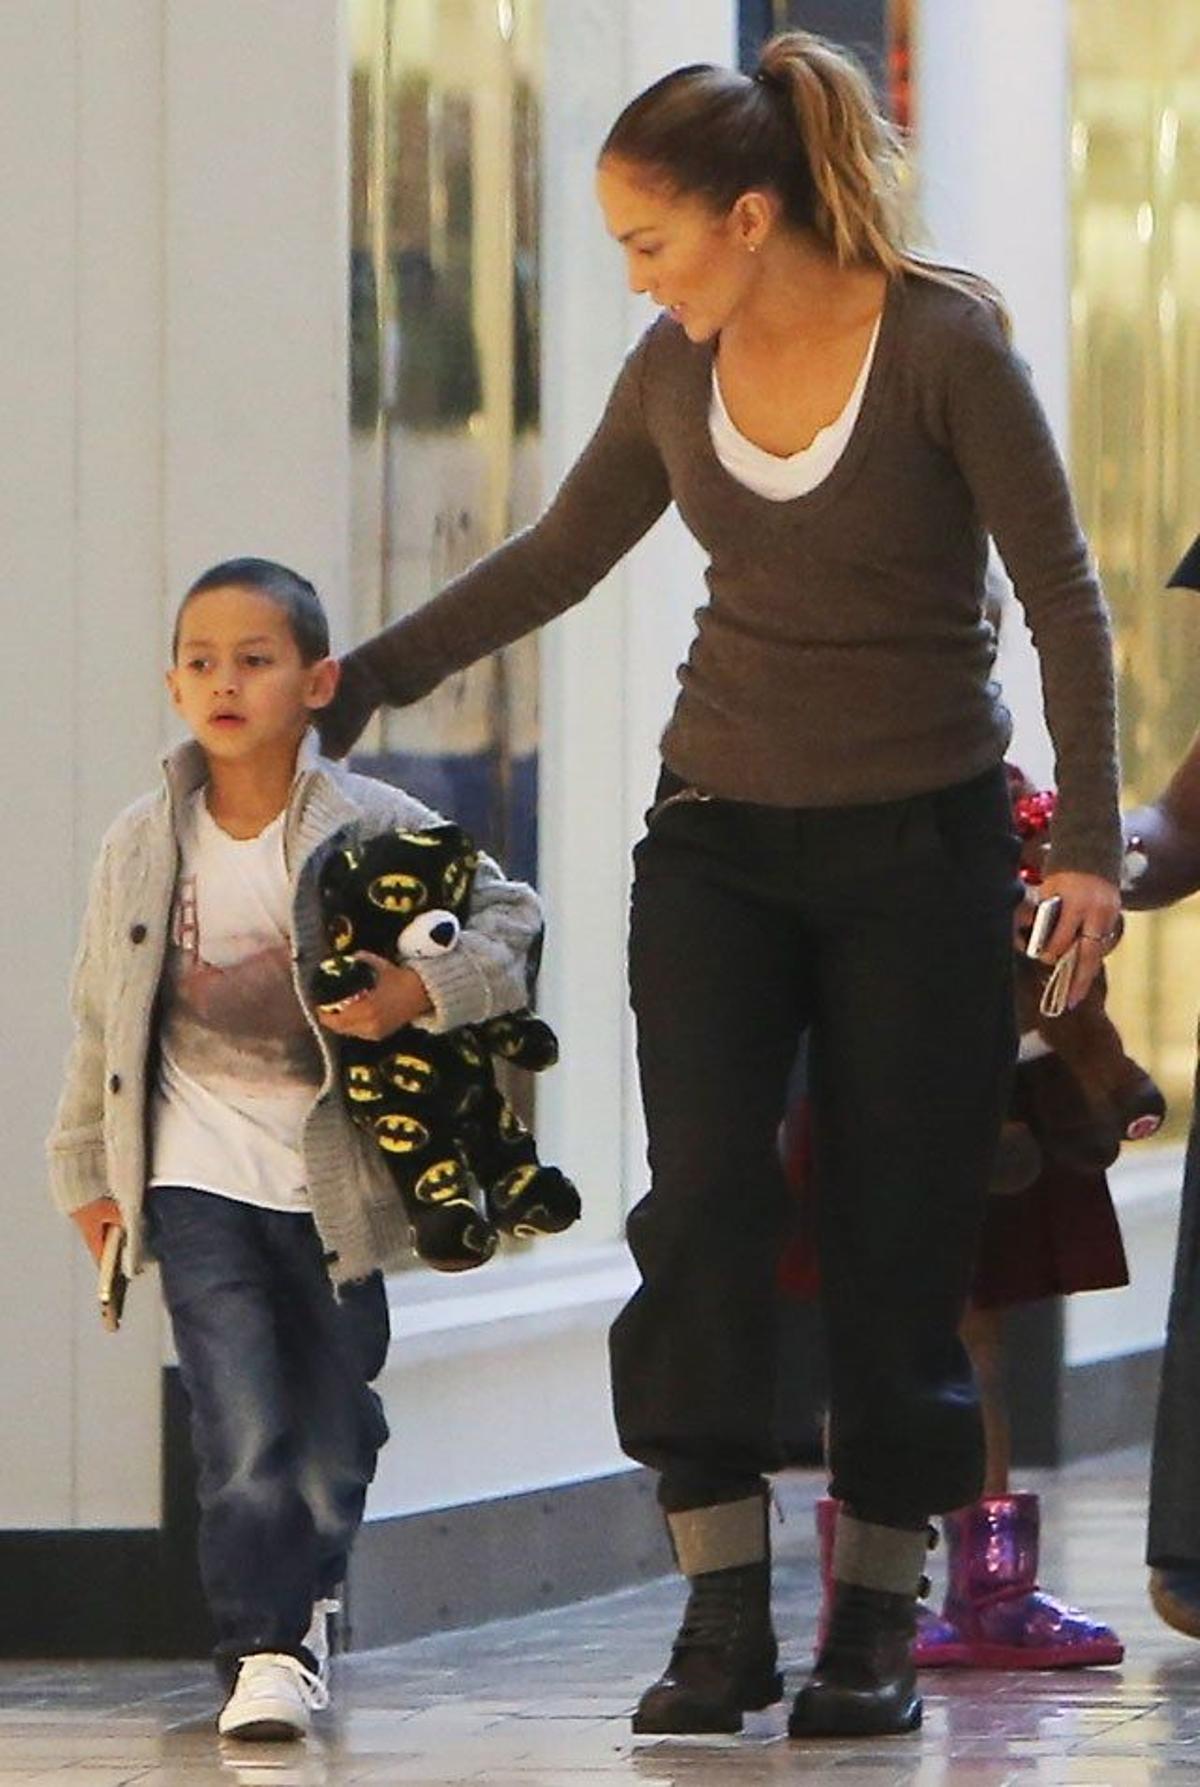 Max y Jennifer Lopez van hablando mientras pasean por un centro comercial